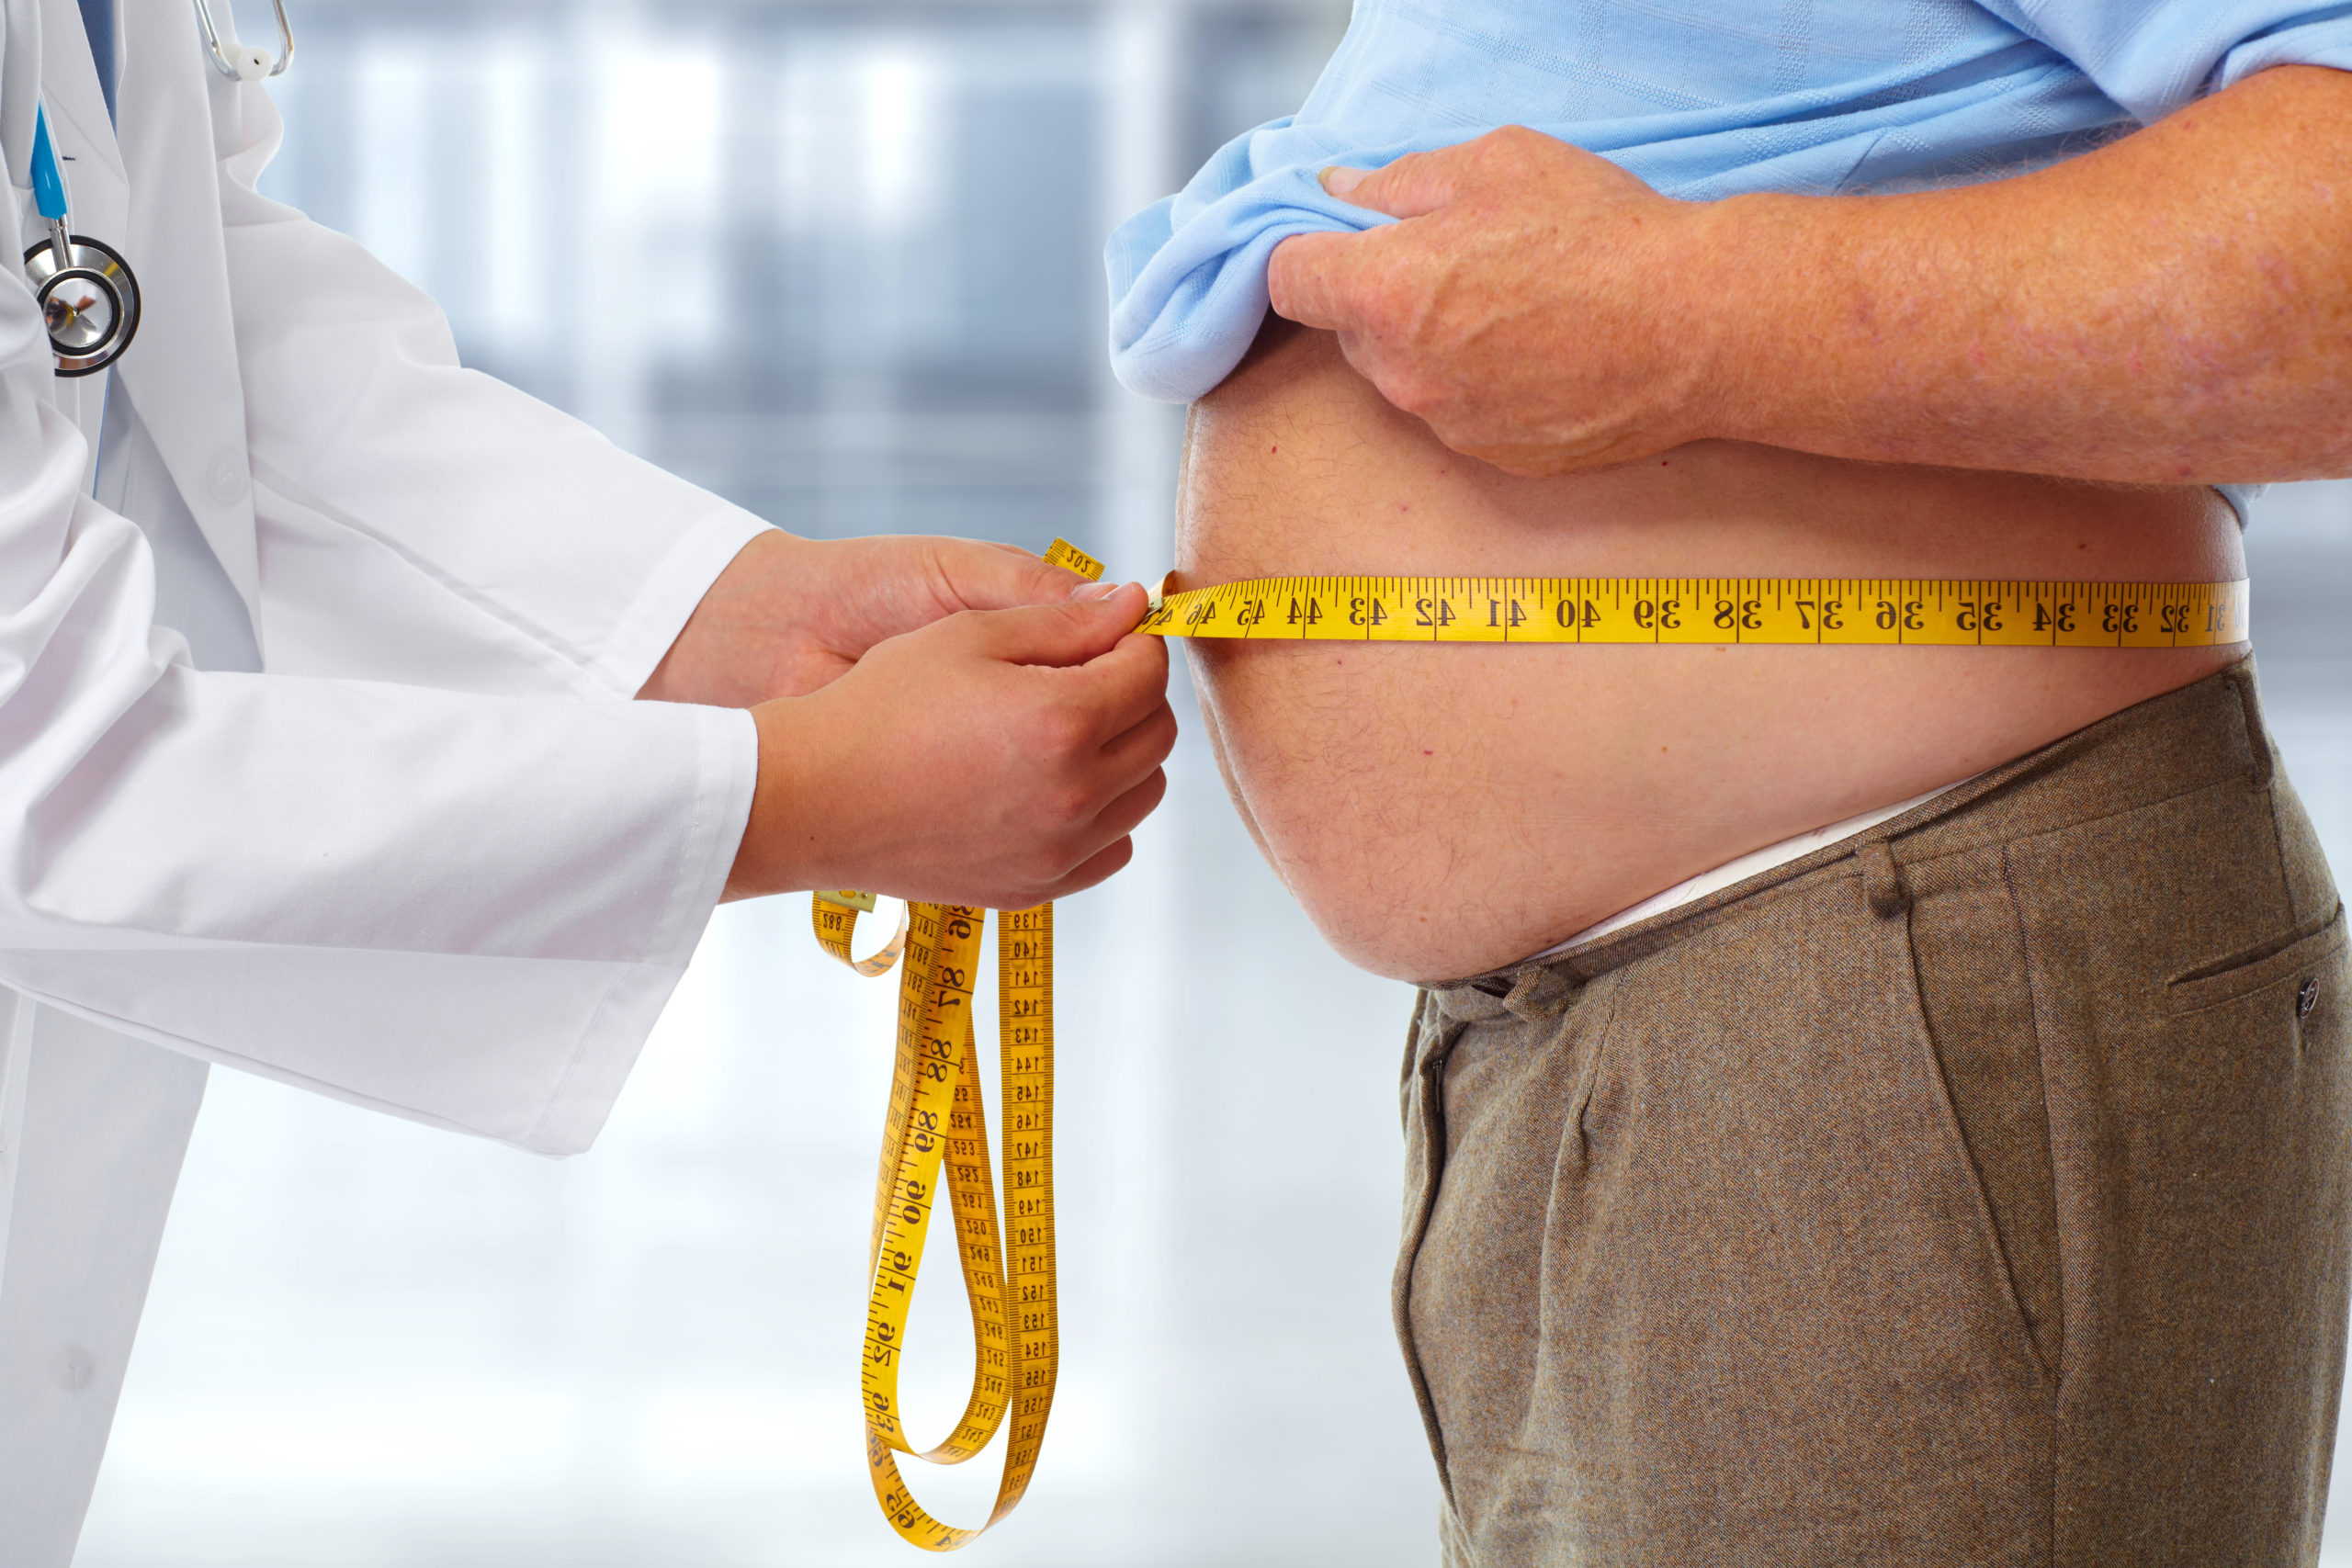 Σεμαγλουτίδη: Το φάρμακο κατά της παχυσαρκίας που “αλλάζει το παιγνίδι”